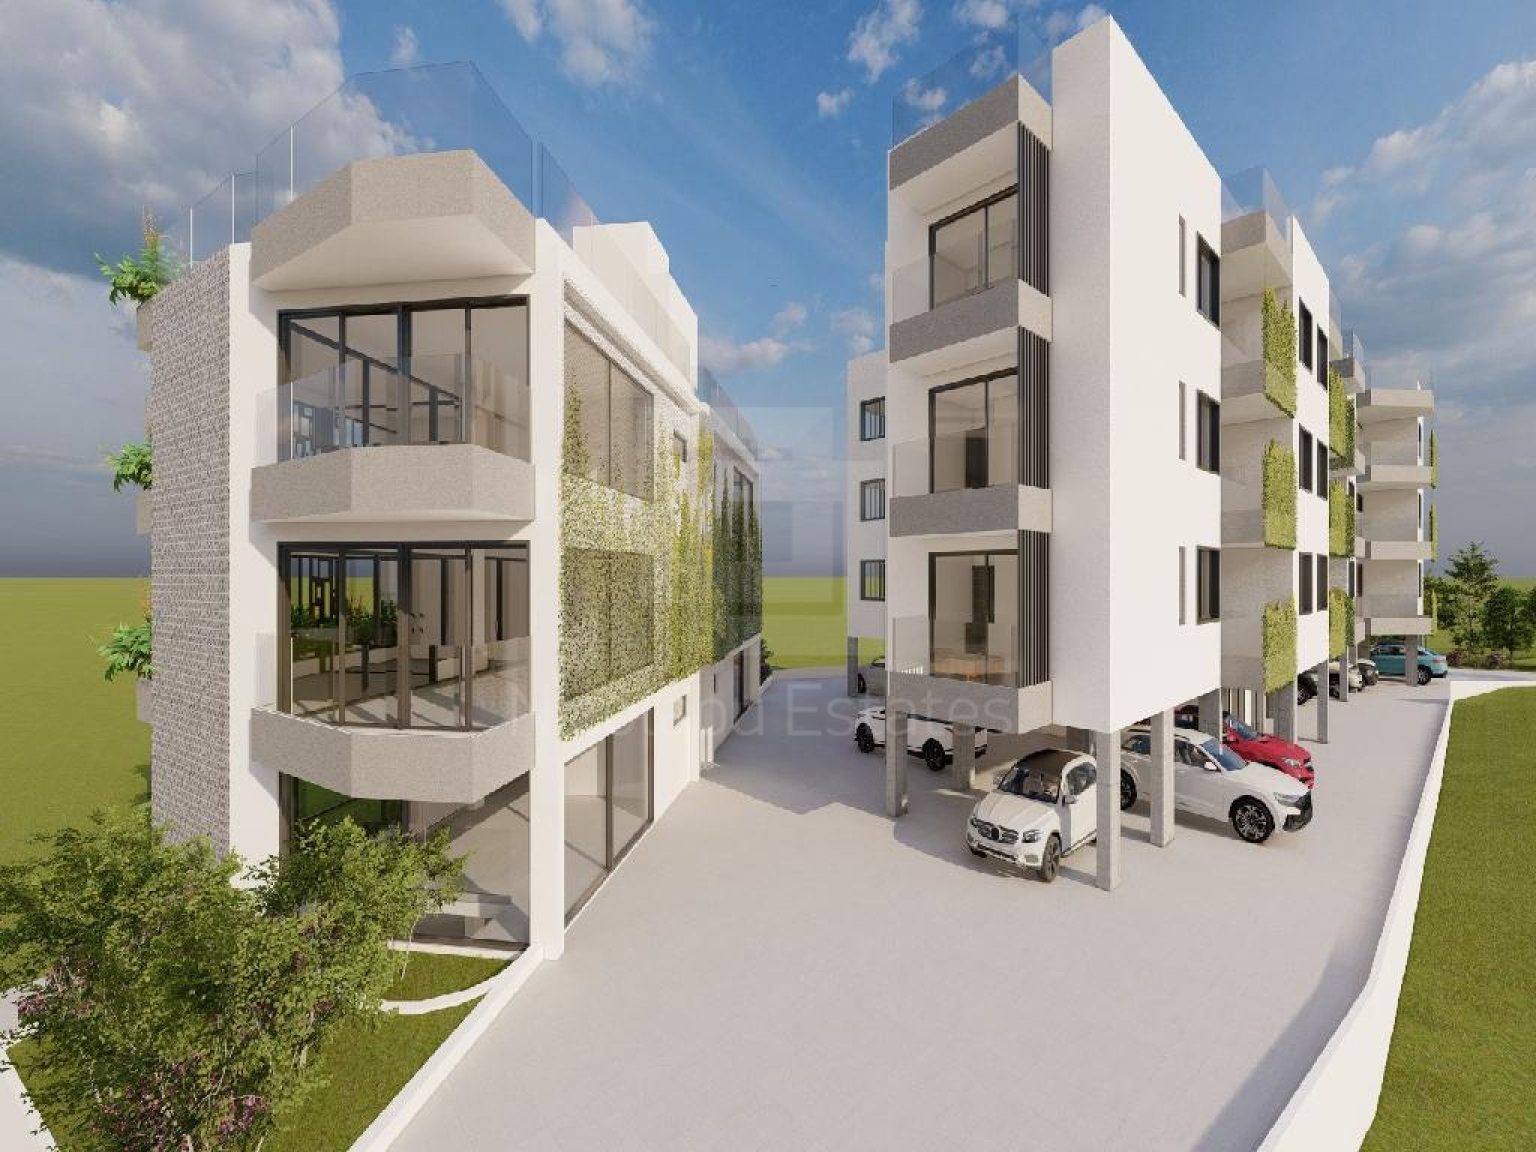 2,074m² Plot for Sale in Strovolos, Nicosia District